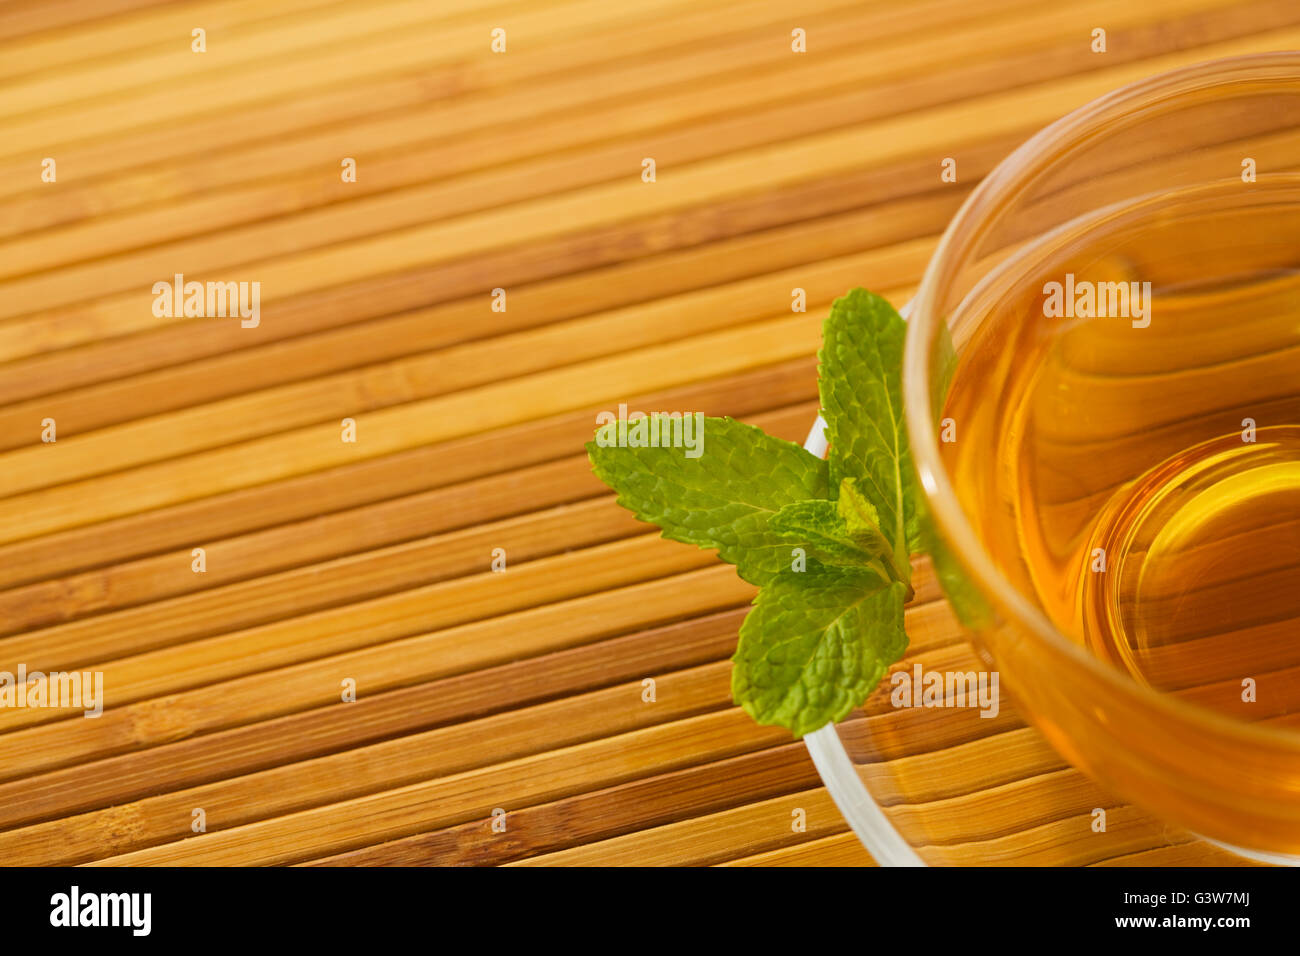 En la taza de té con hojas de menta sobre platillo Foto de stock